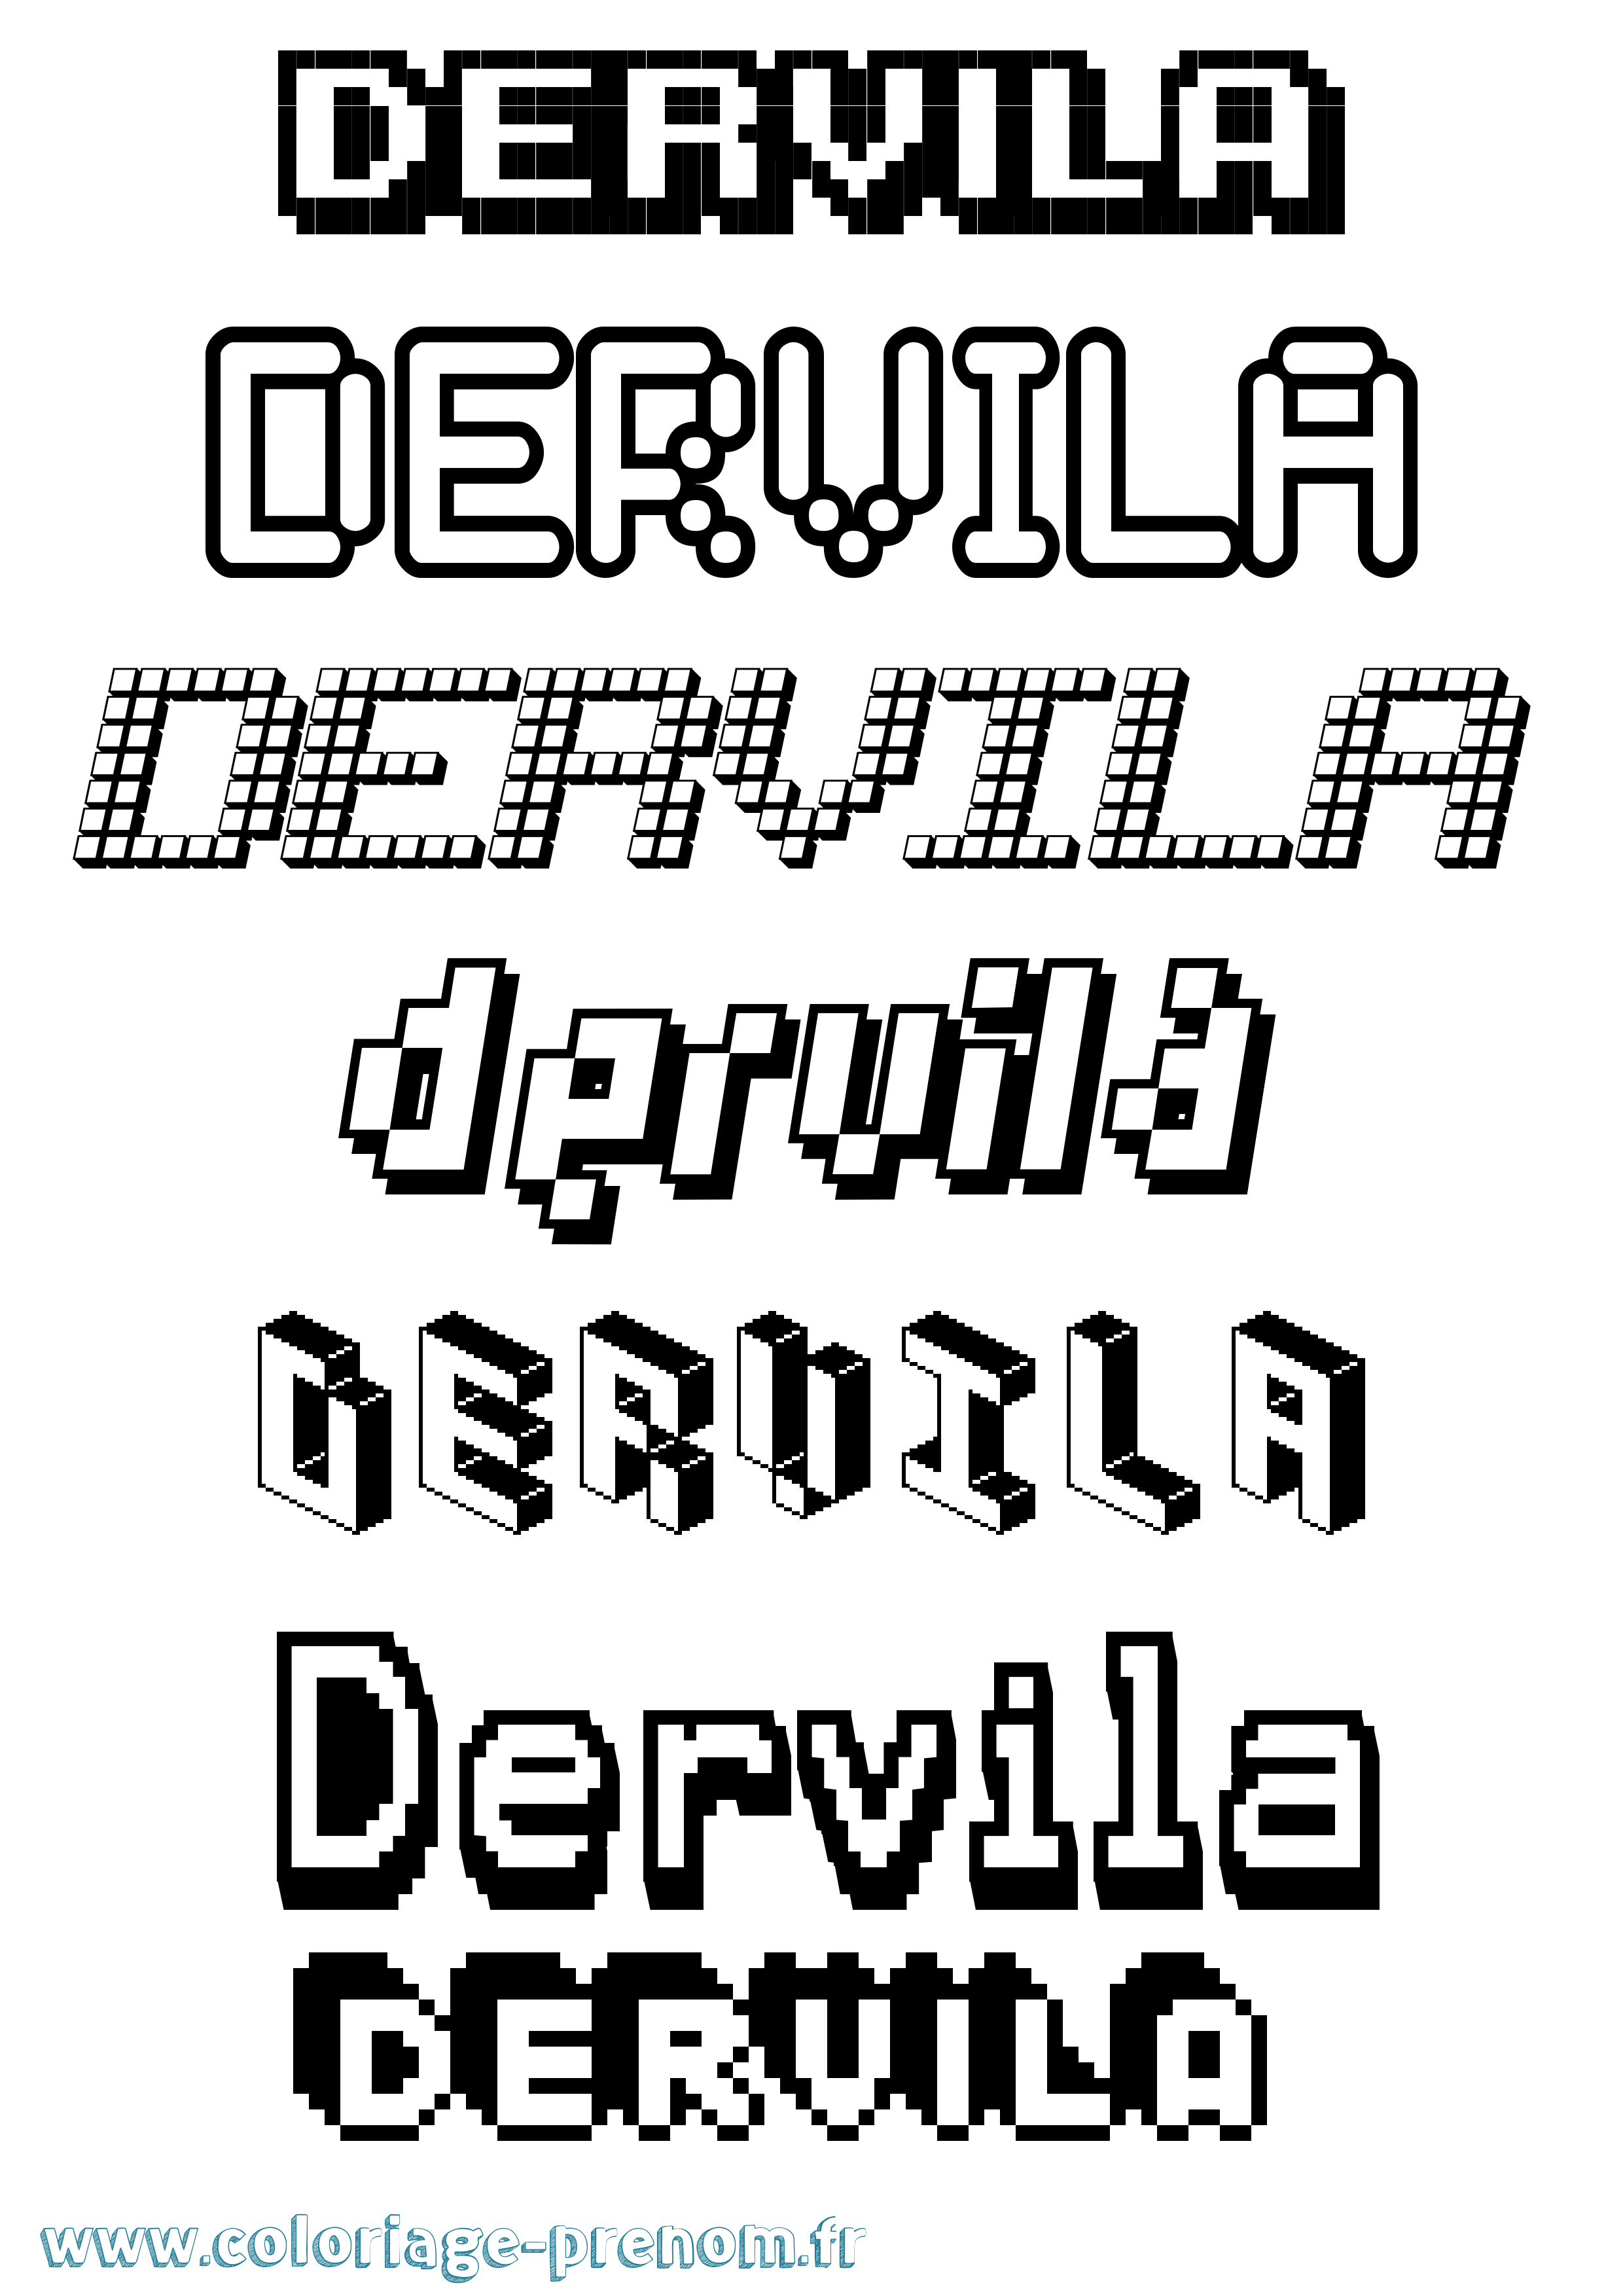 Coloriage prénom Dervila Pixel